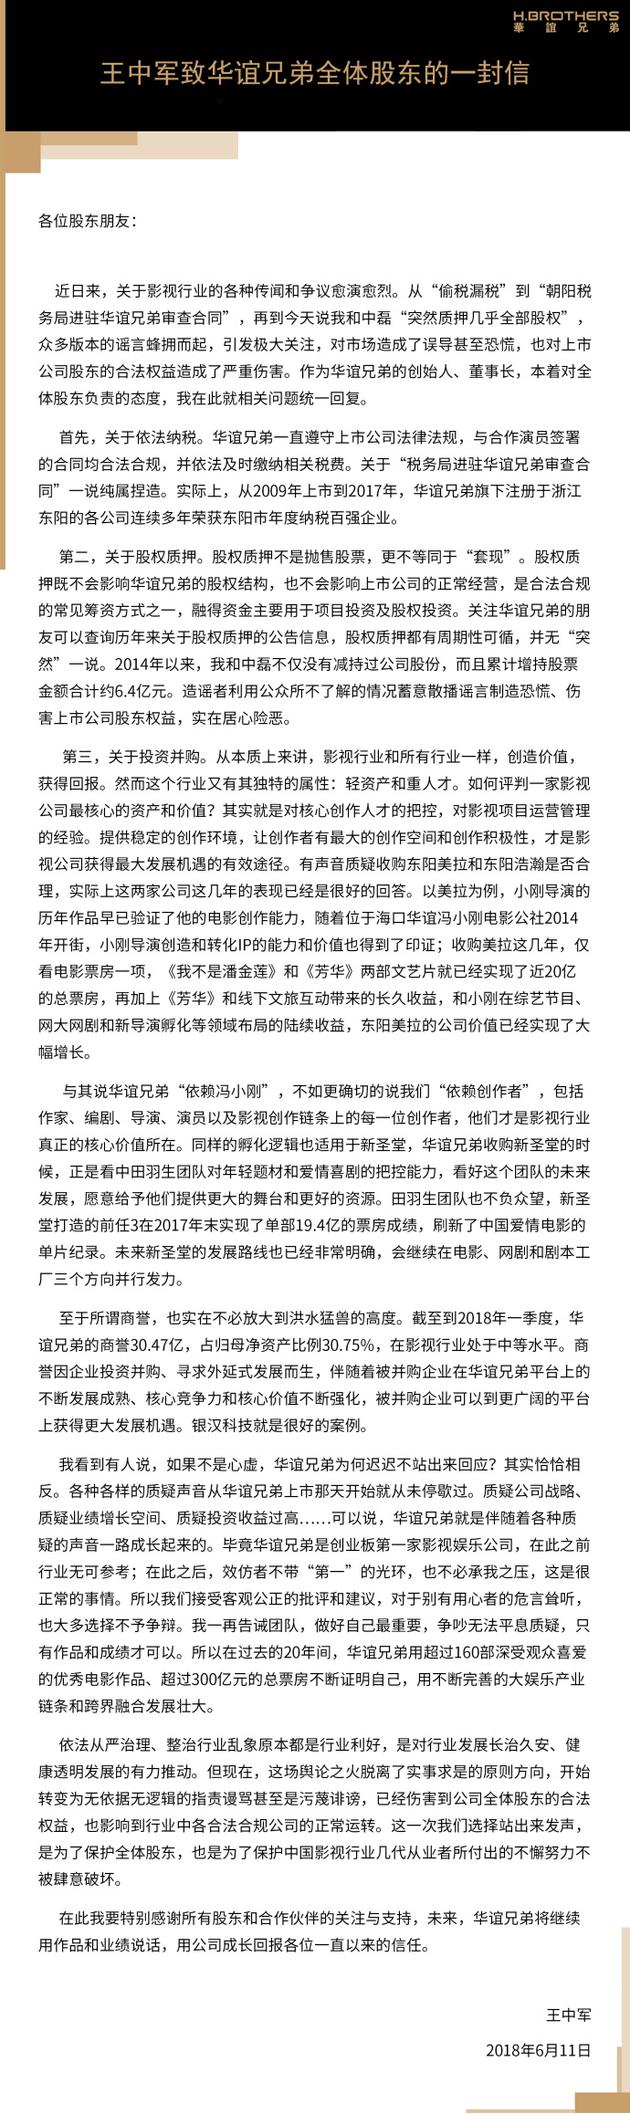 华谊兄弟董事长王中军致全体股东的一封信 ????